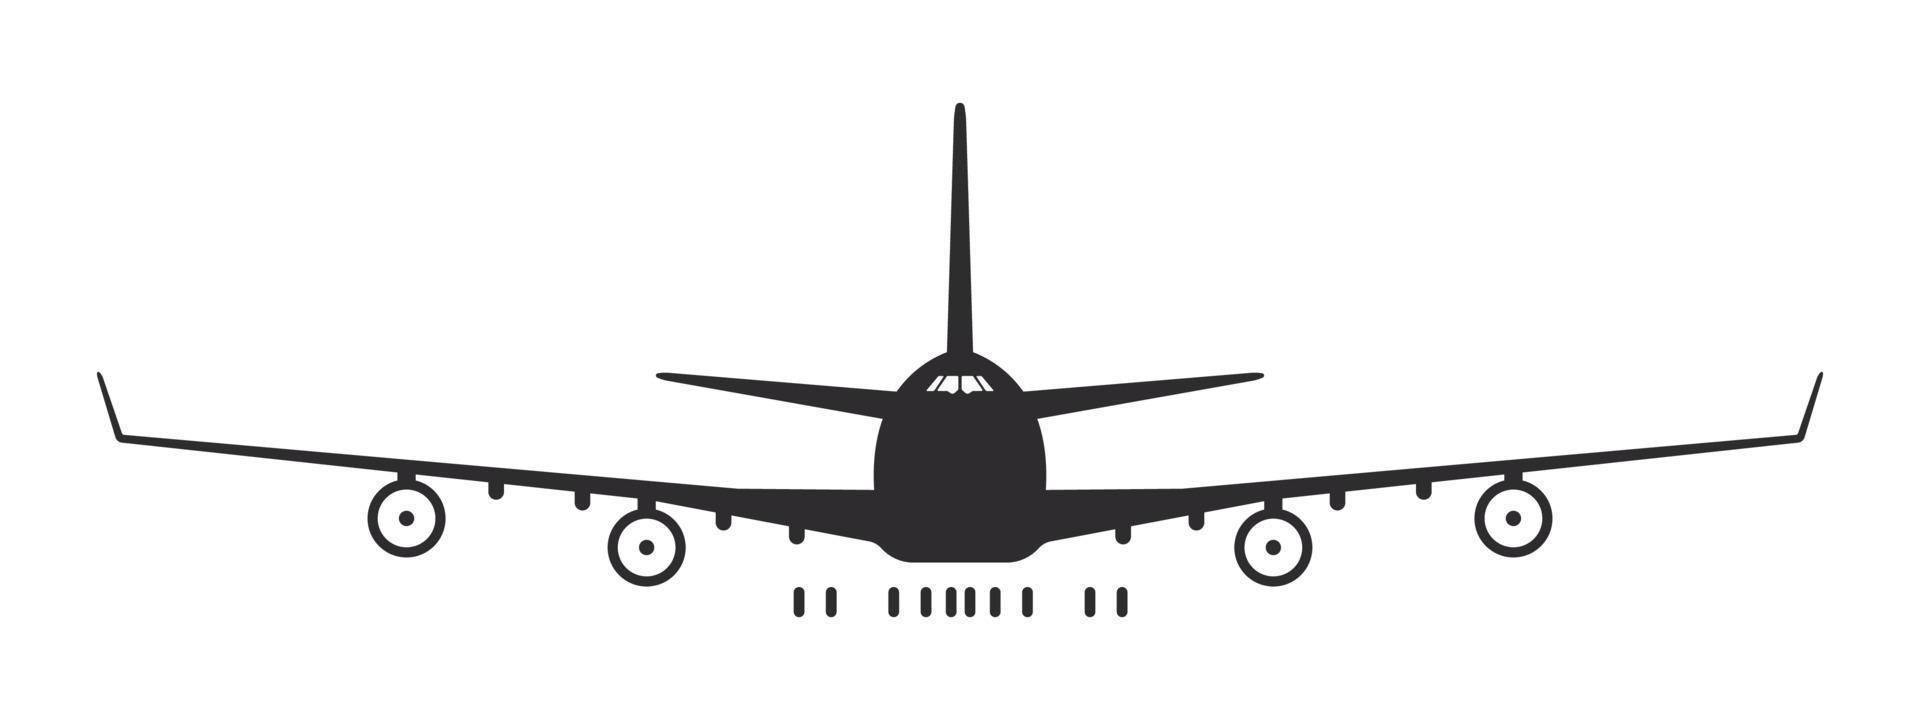 avion. grand avion à turbine. vue de face de silhouette d'avion. symbole de transport aérien. image vectorielle vecteur